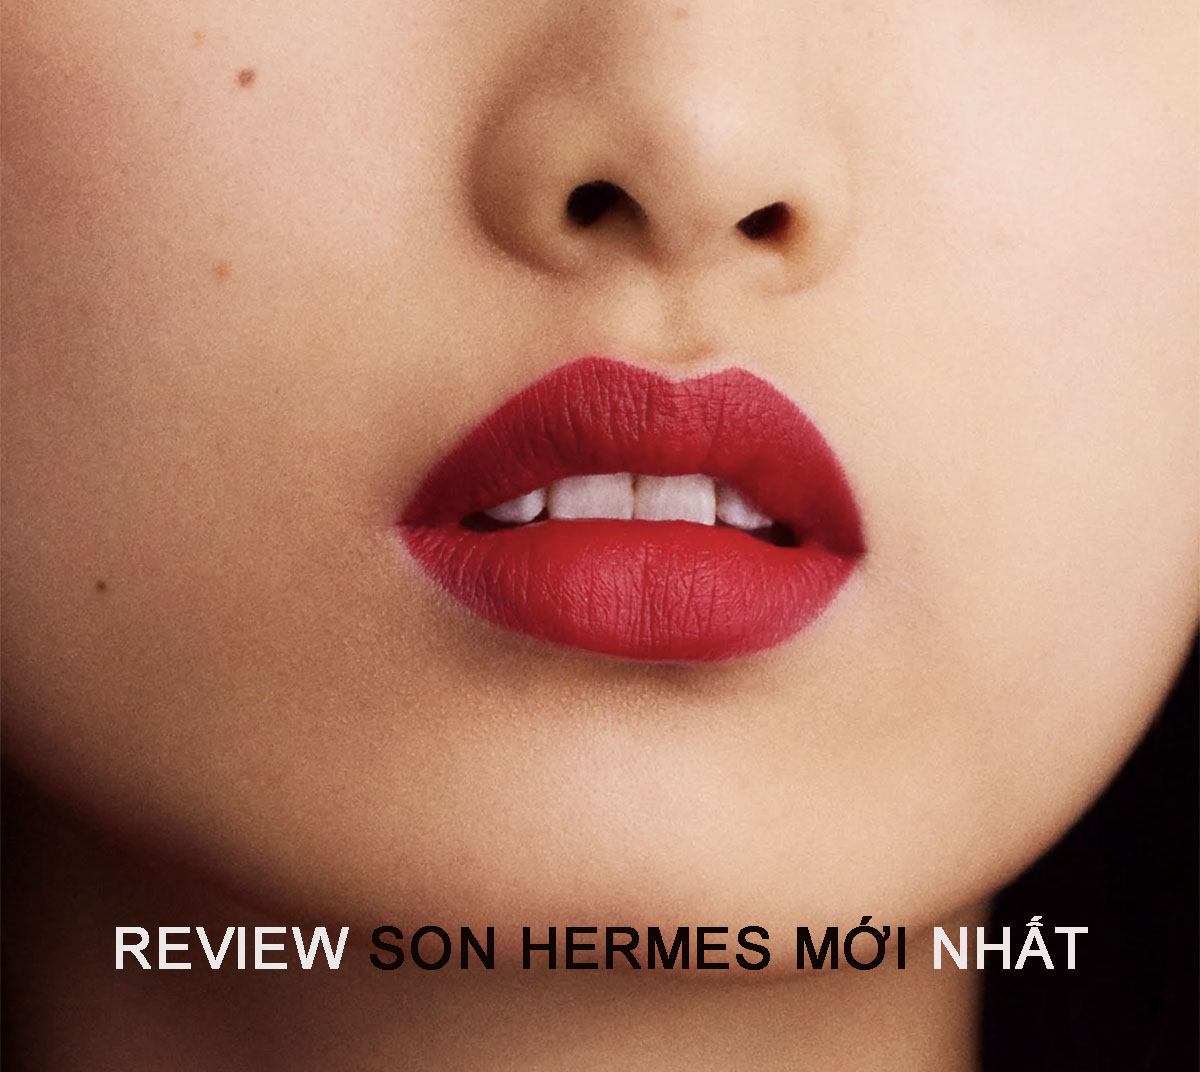 Review son Hermes mới nhất khiến chị em đứng ngồi không yên